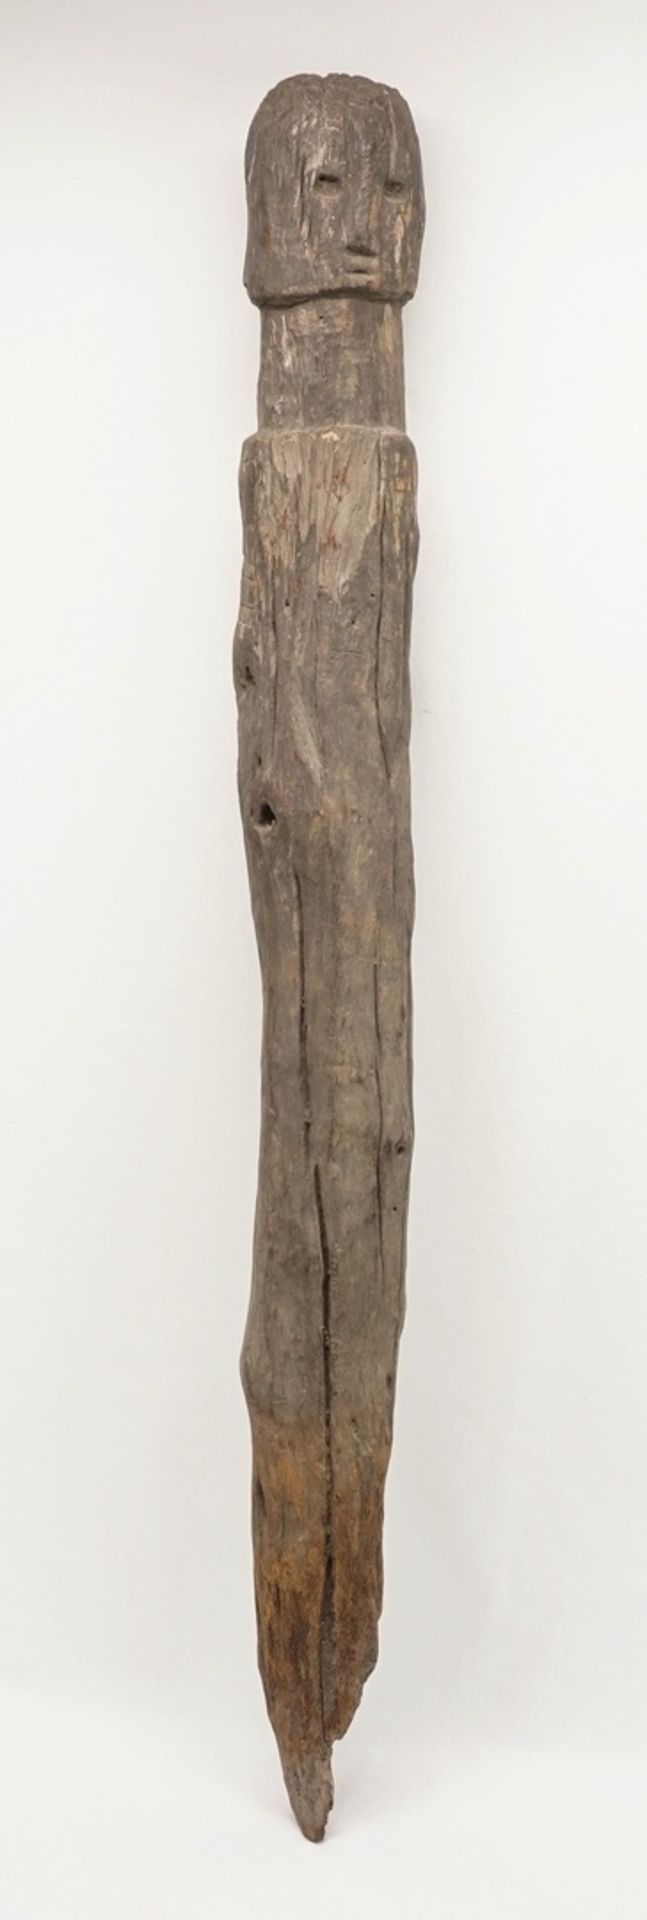 Bochio Figur, Benin / Togo, 1. Hälfte 20. Jh.Hartholz, authentische Pfostenfigur mit